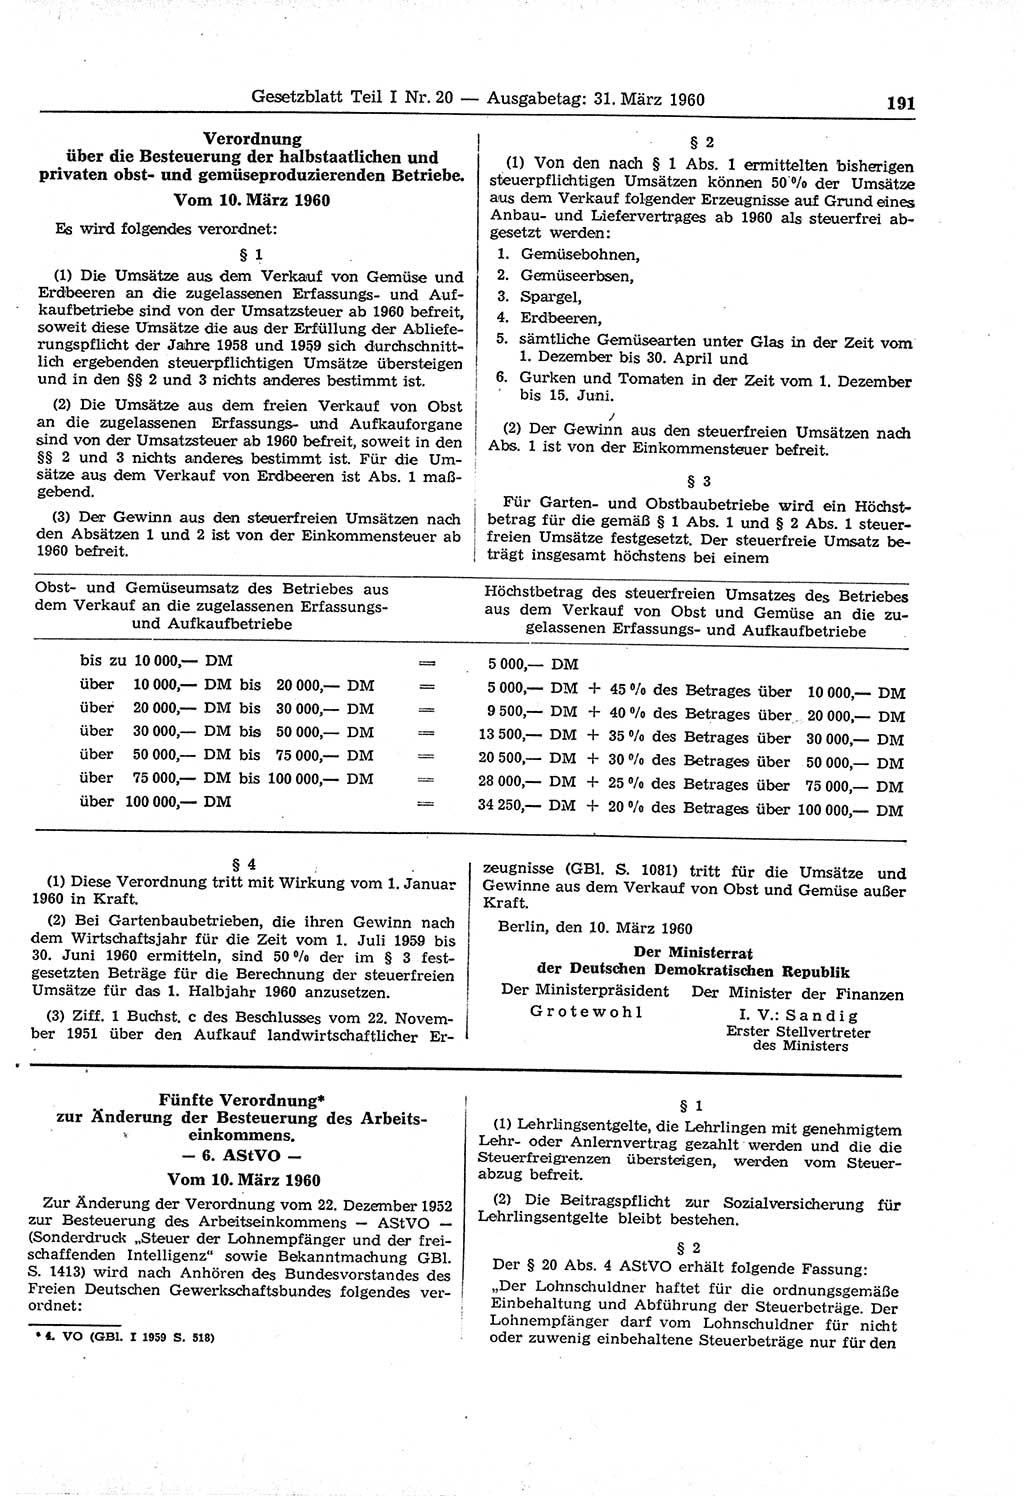 Gesetzblatt (GBl.) der Deutschen Demokratischen Republik (DDR) Teil Ⅰ 1960, Seite 191 (GBl. DDR Ⅰ 1960, S. 191)